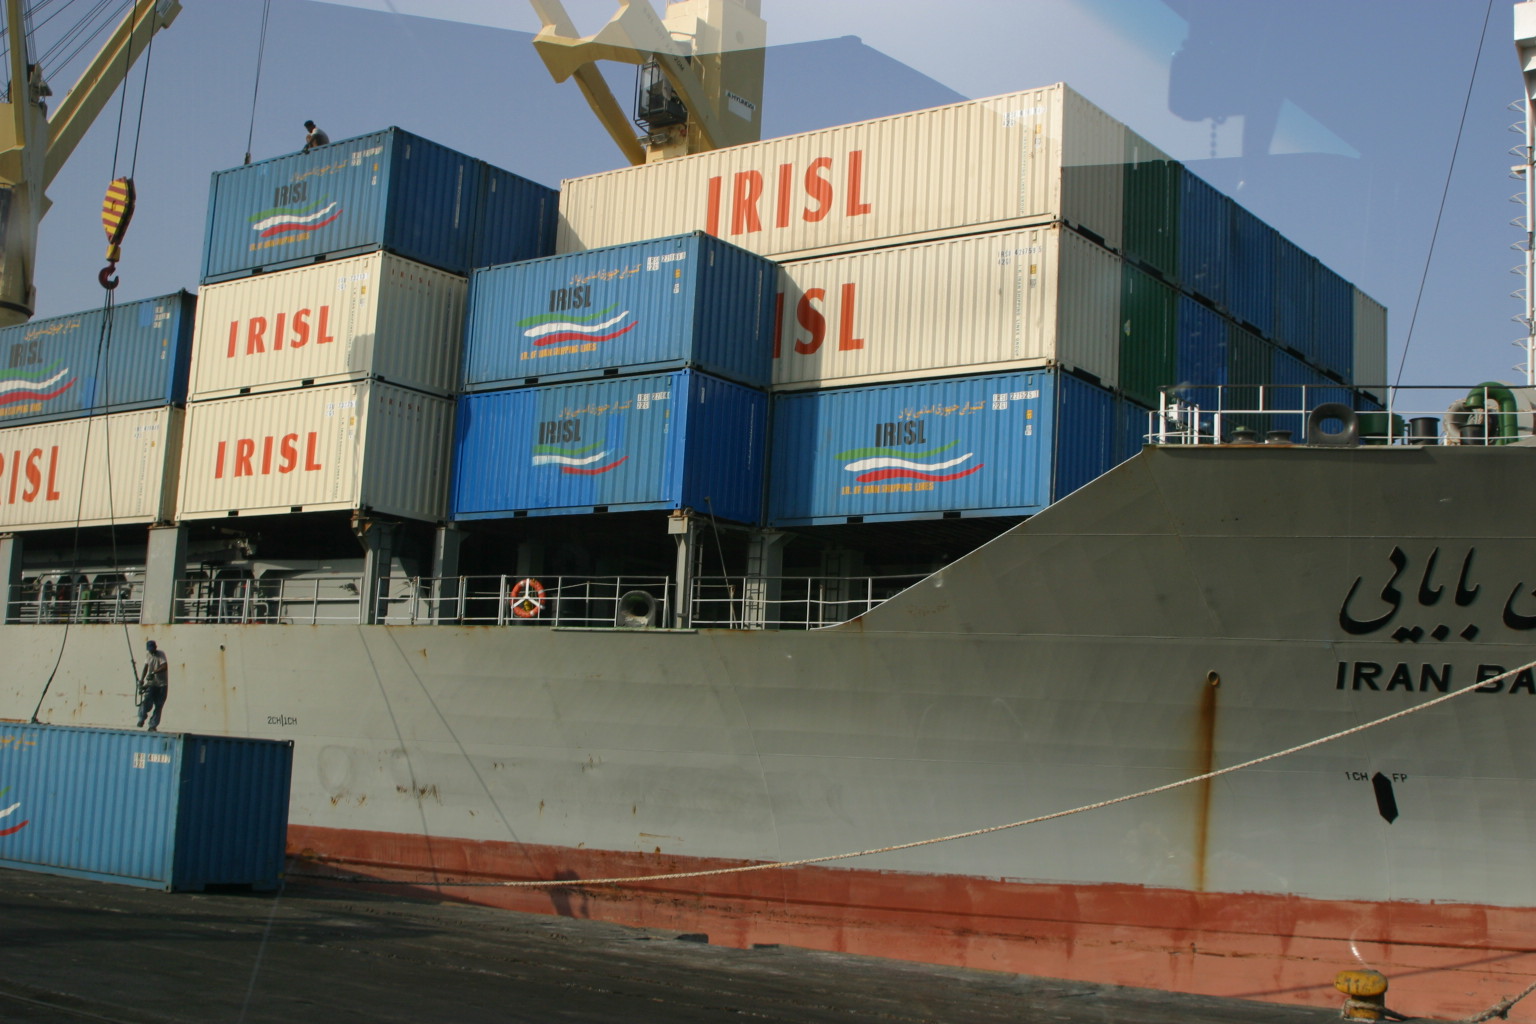  رییس کنفدراسیون صادرات ایران:افزایش ۲۱ درصدی صادرات به رشد اقتصادی منجر شده است